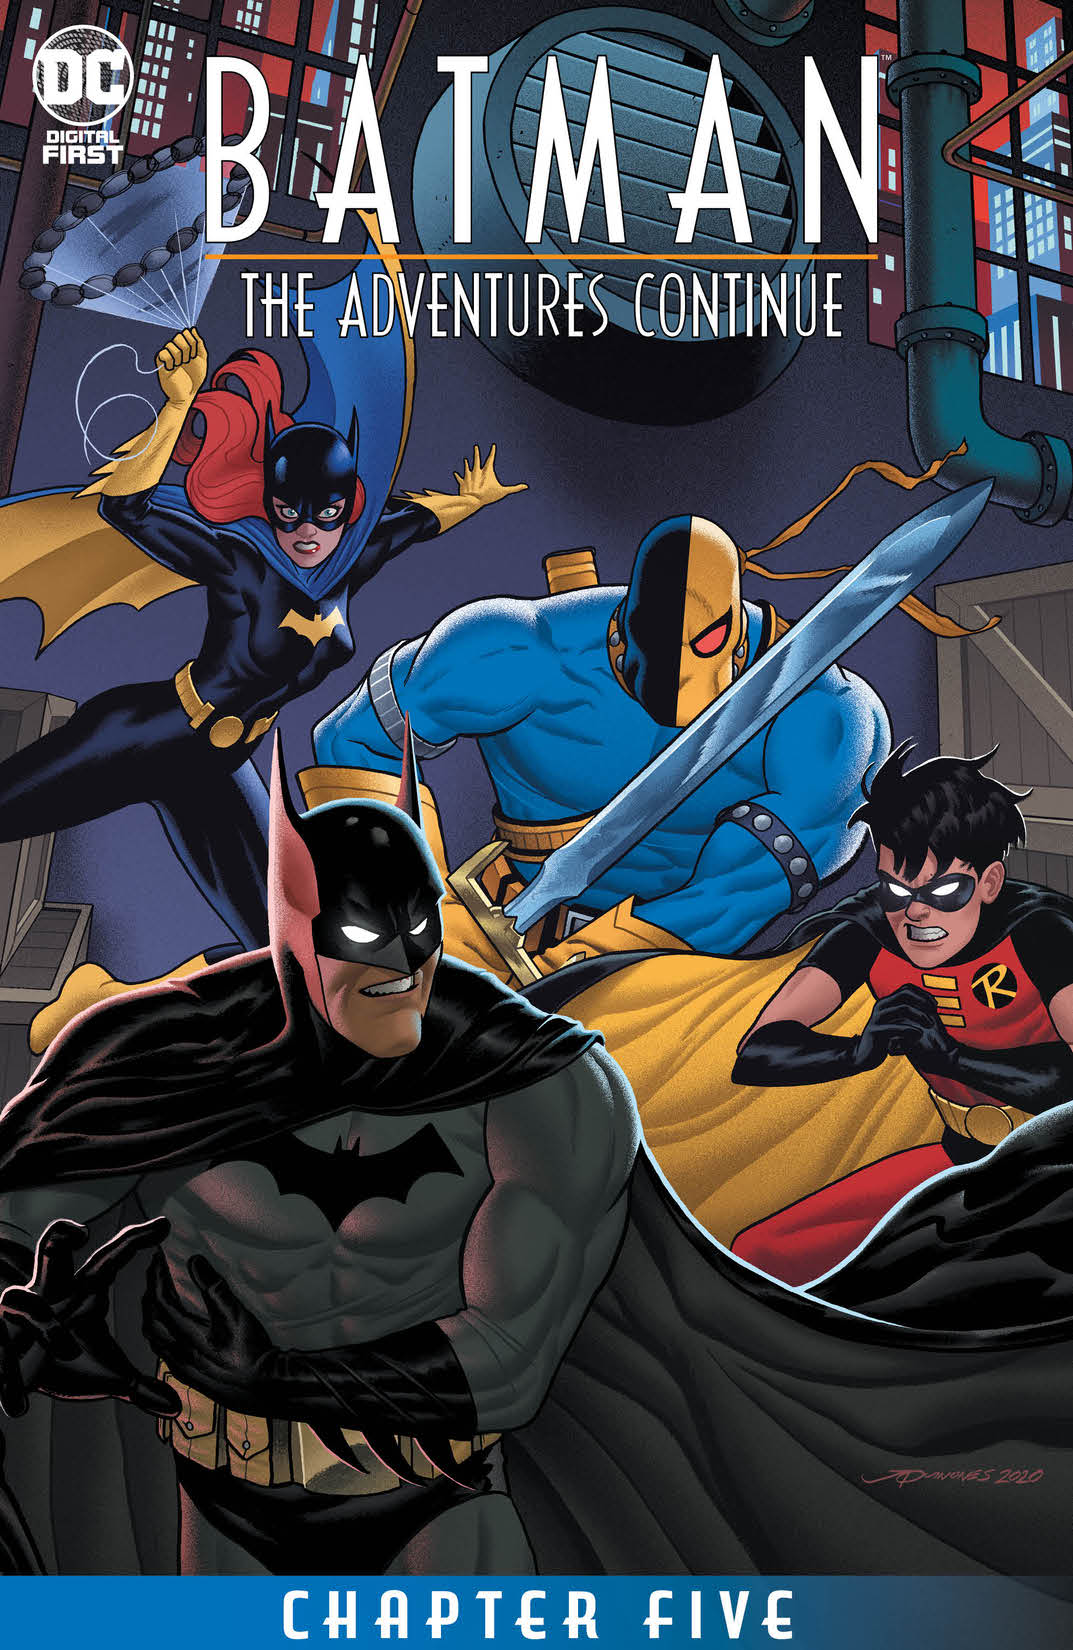 Batman: The Adventures Continue #5 preview images